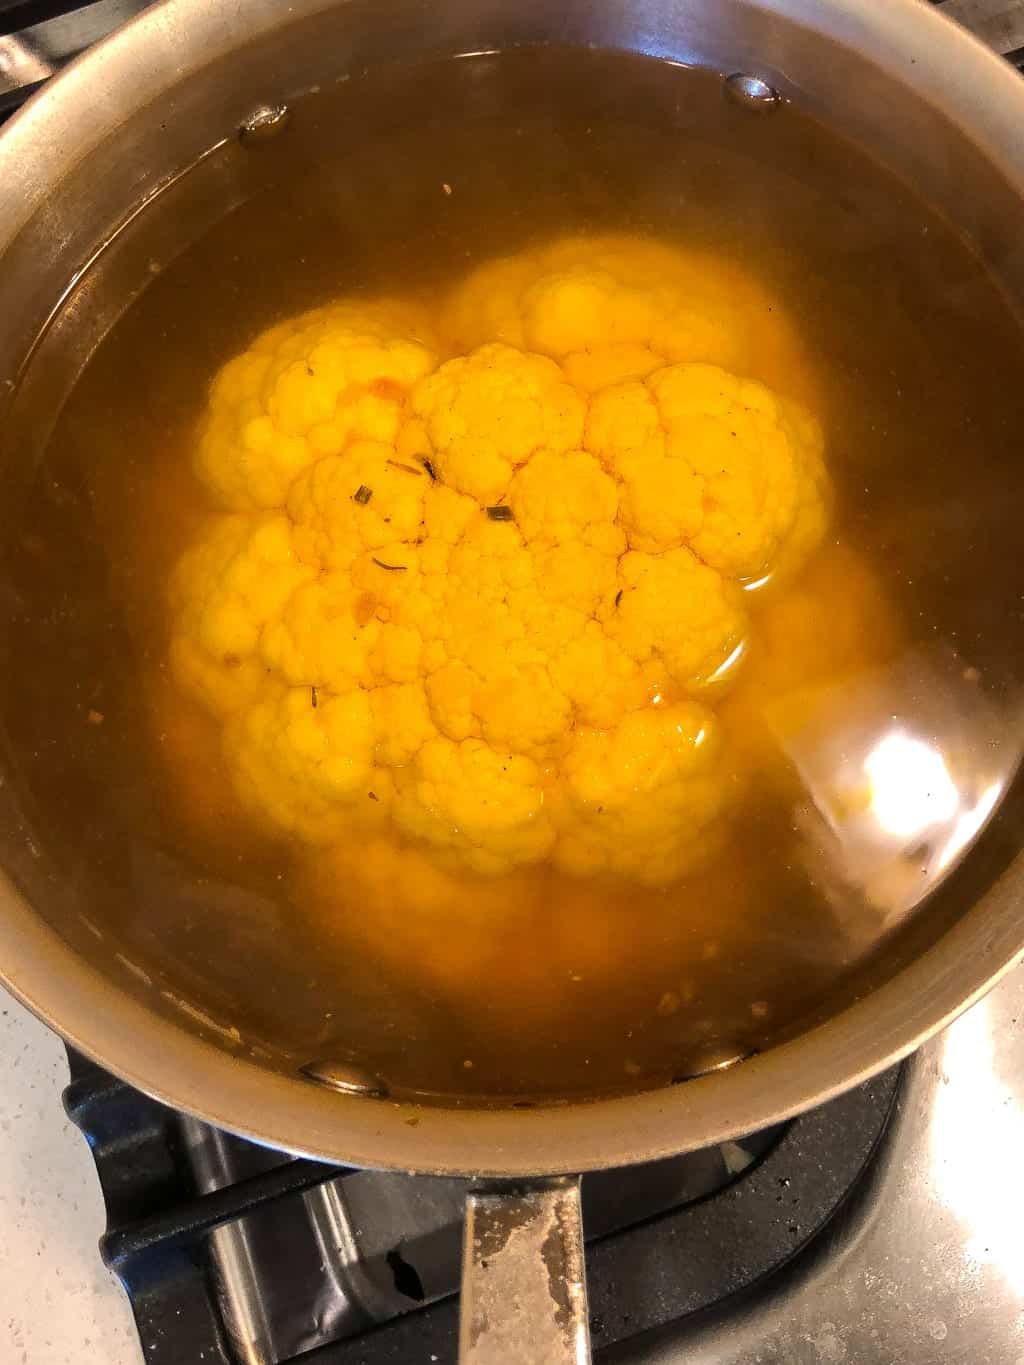 cauliflower poached in liquid